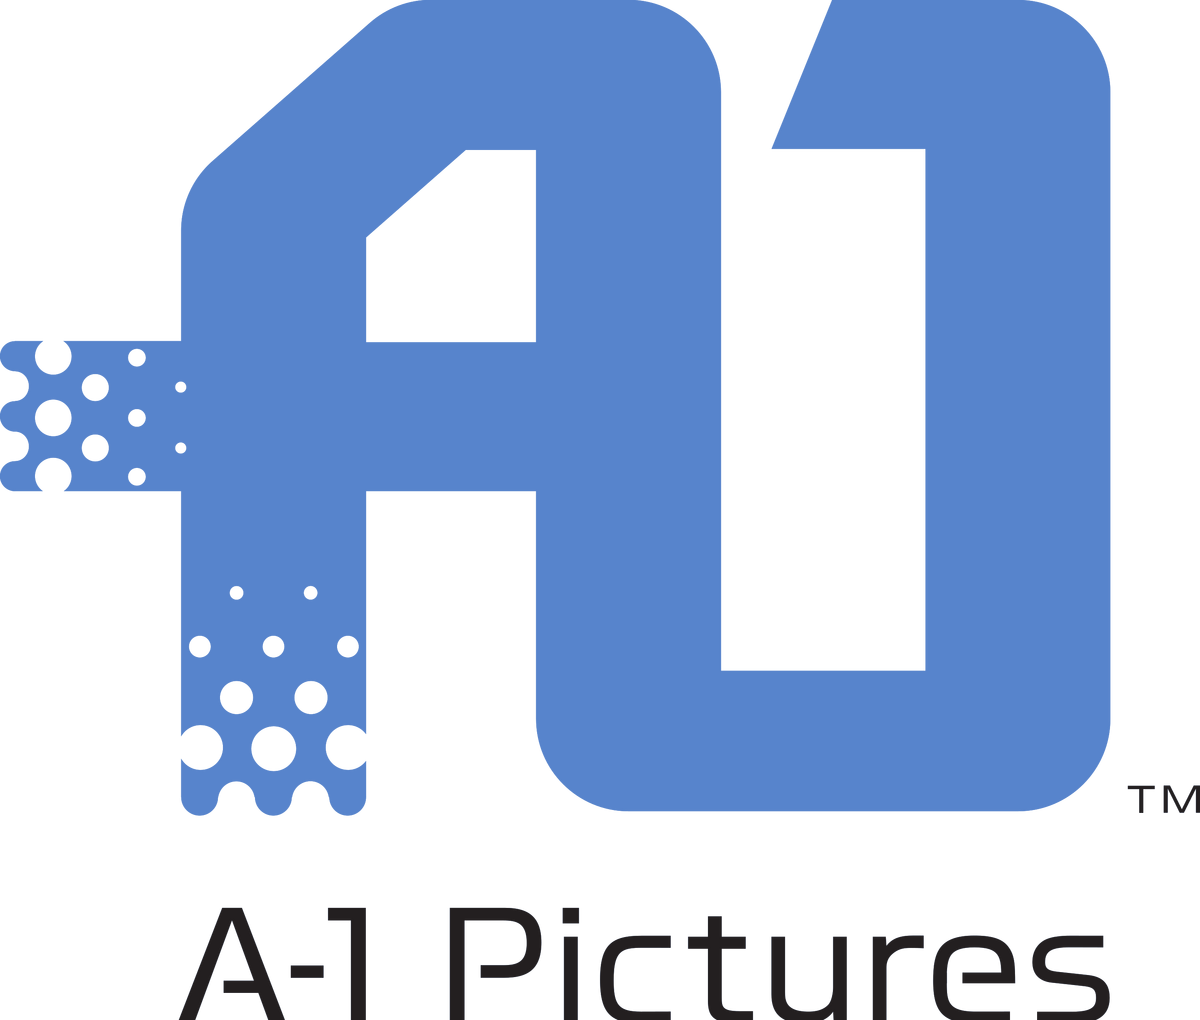 1 archive org. А-1 Пикчерз. A-1 pictures студия. 1с логотип. Логотип Studio one.